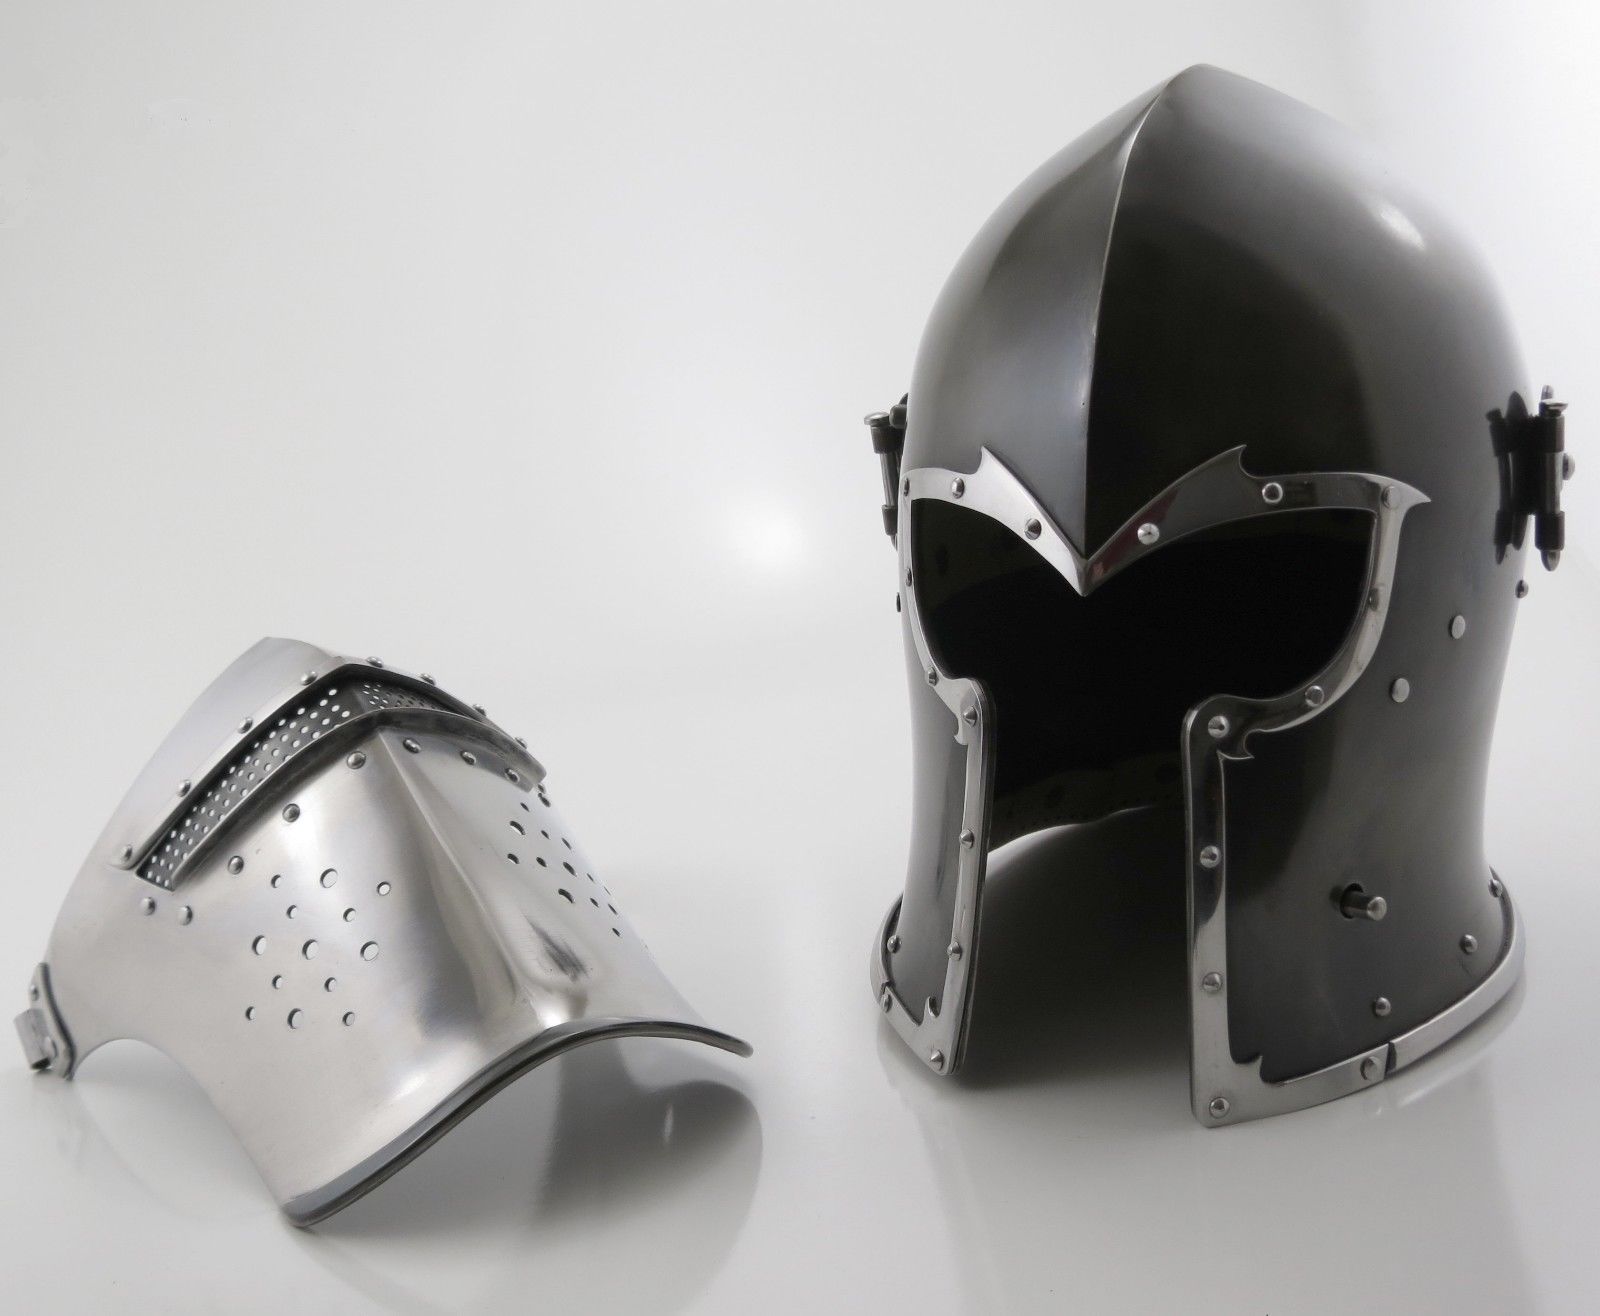 NauticalMart Medieval Knight Larp Armor Crusader New Templar Helmet